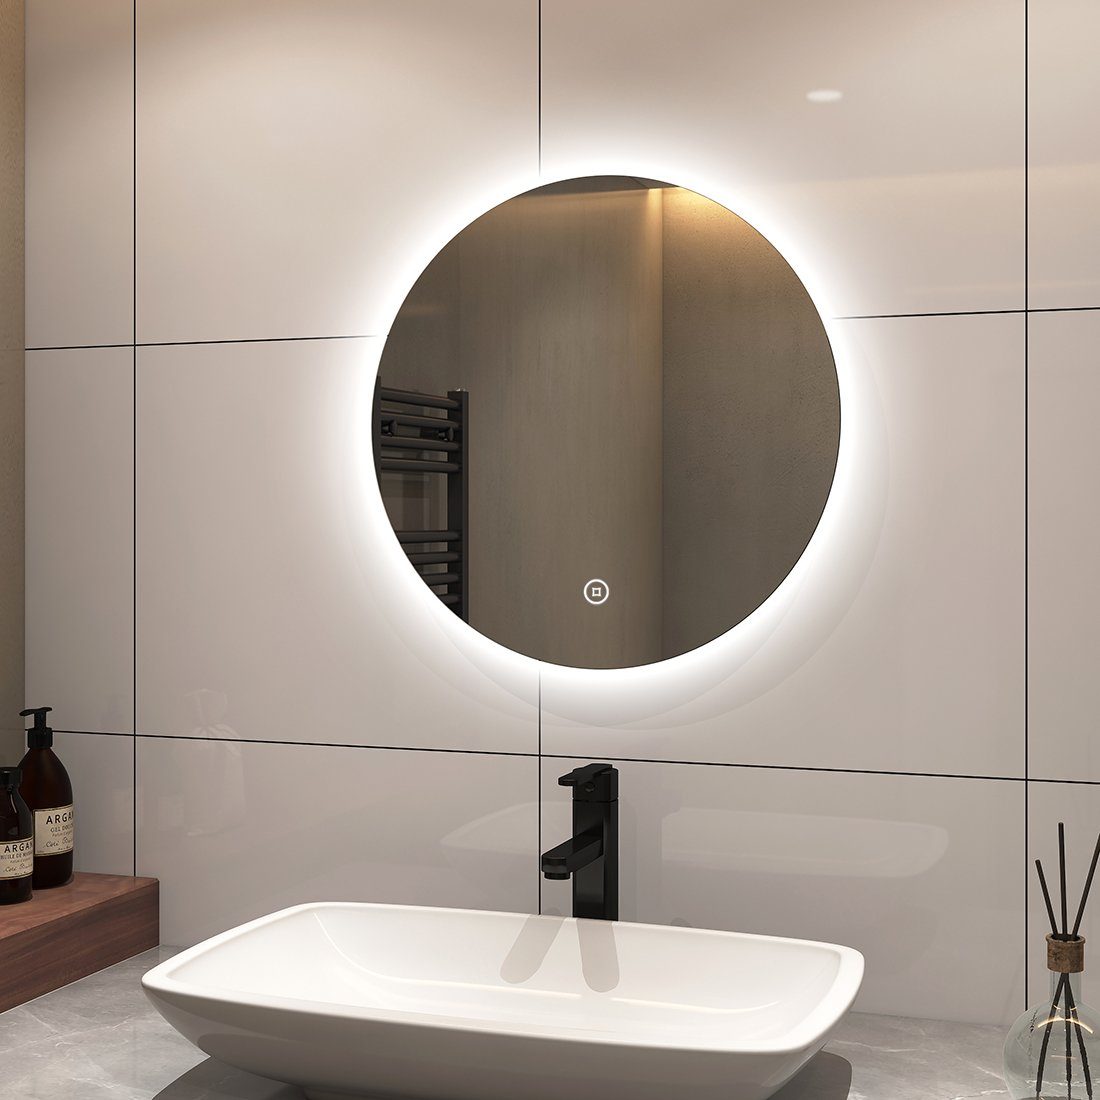 S'AFIELINA Badspiegel LED Badspiegel Rund Wandspiegel mit Beleuchtung Badezimmerspiegel, Touch Schalter,Kaltweiß 6500K,Einstellbare Helligkeit,IP44